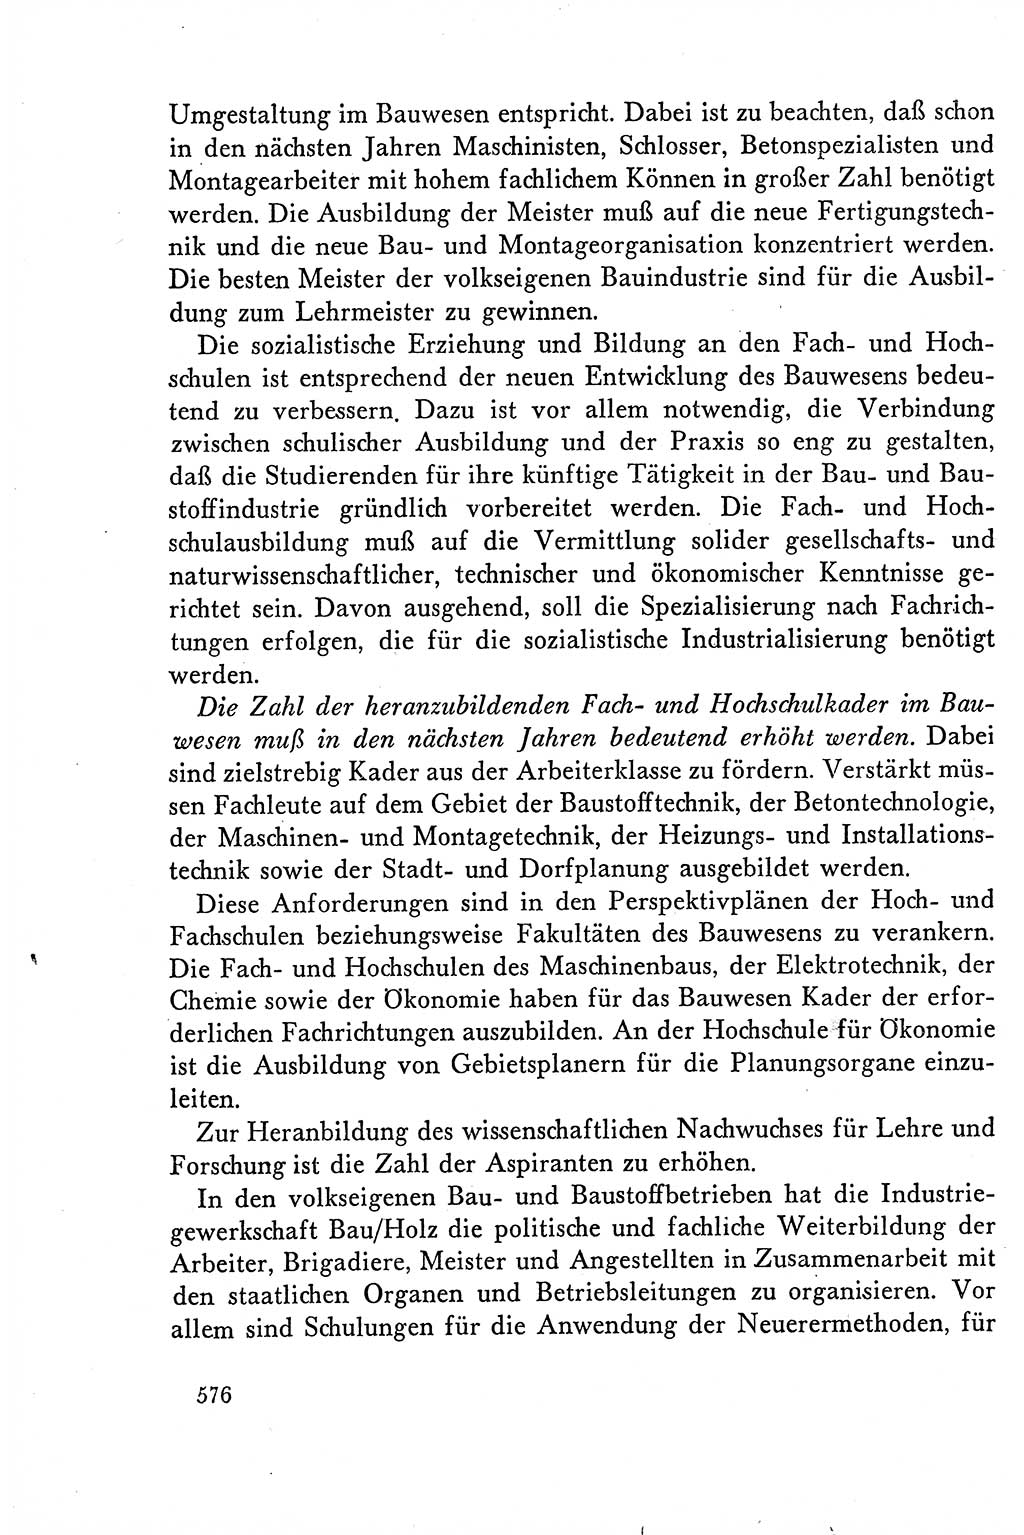 Dokumente der Sozialistischen Einheitspartei Deutschlands (SED) [Deutsche Demokratische Republik (DDR)] 1958-1959, Seite 576 (Dok. SED DDR 1958-1959, S. 576)